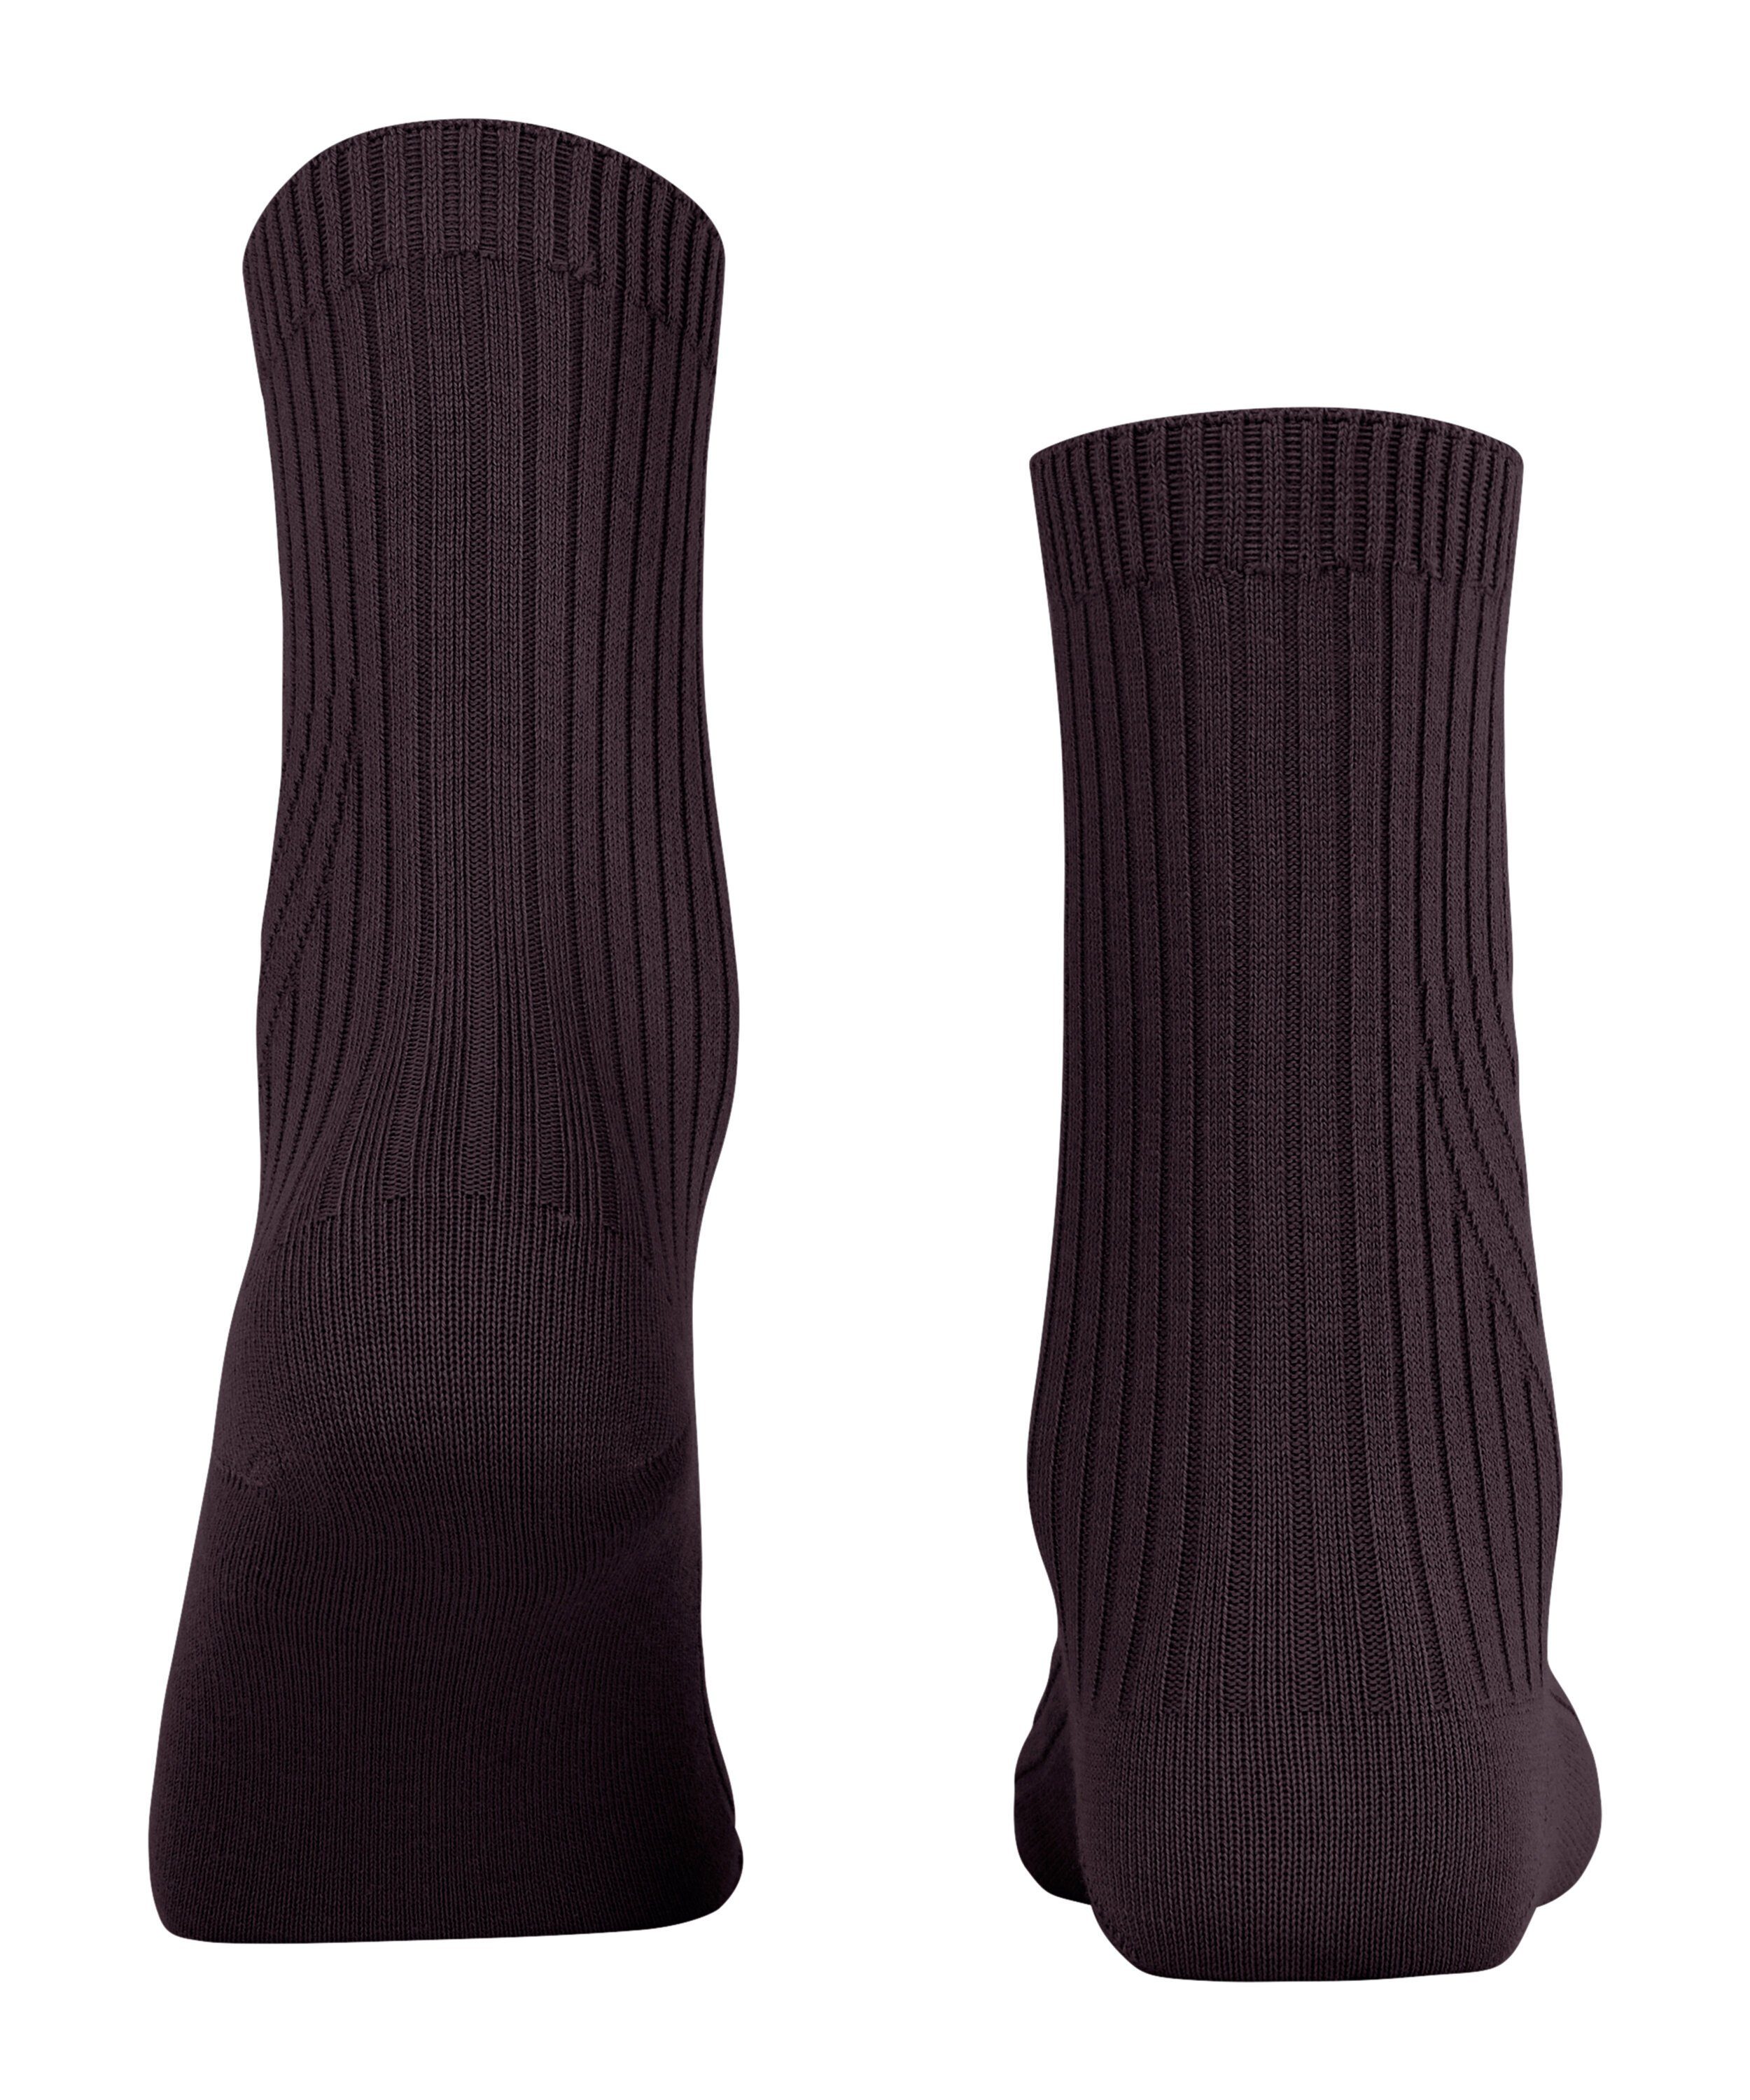 FALKE (8595) Knit (1-Paar) blackberry Cross Socken